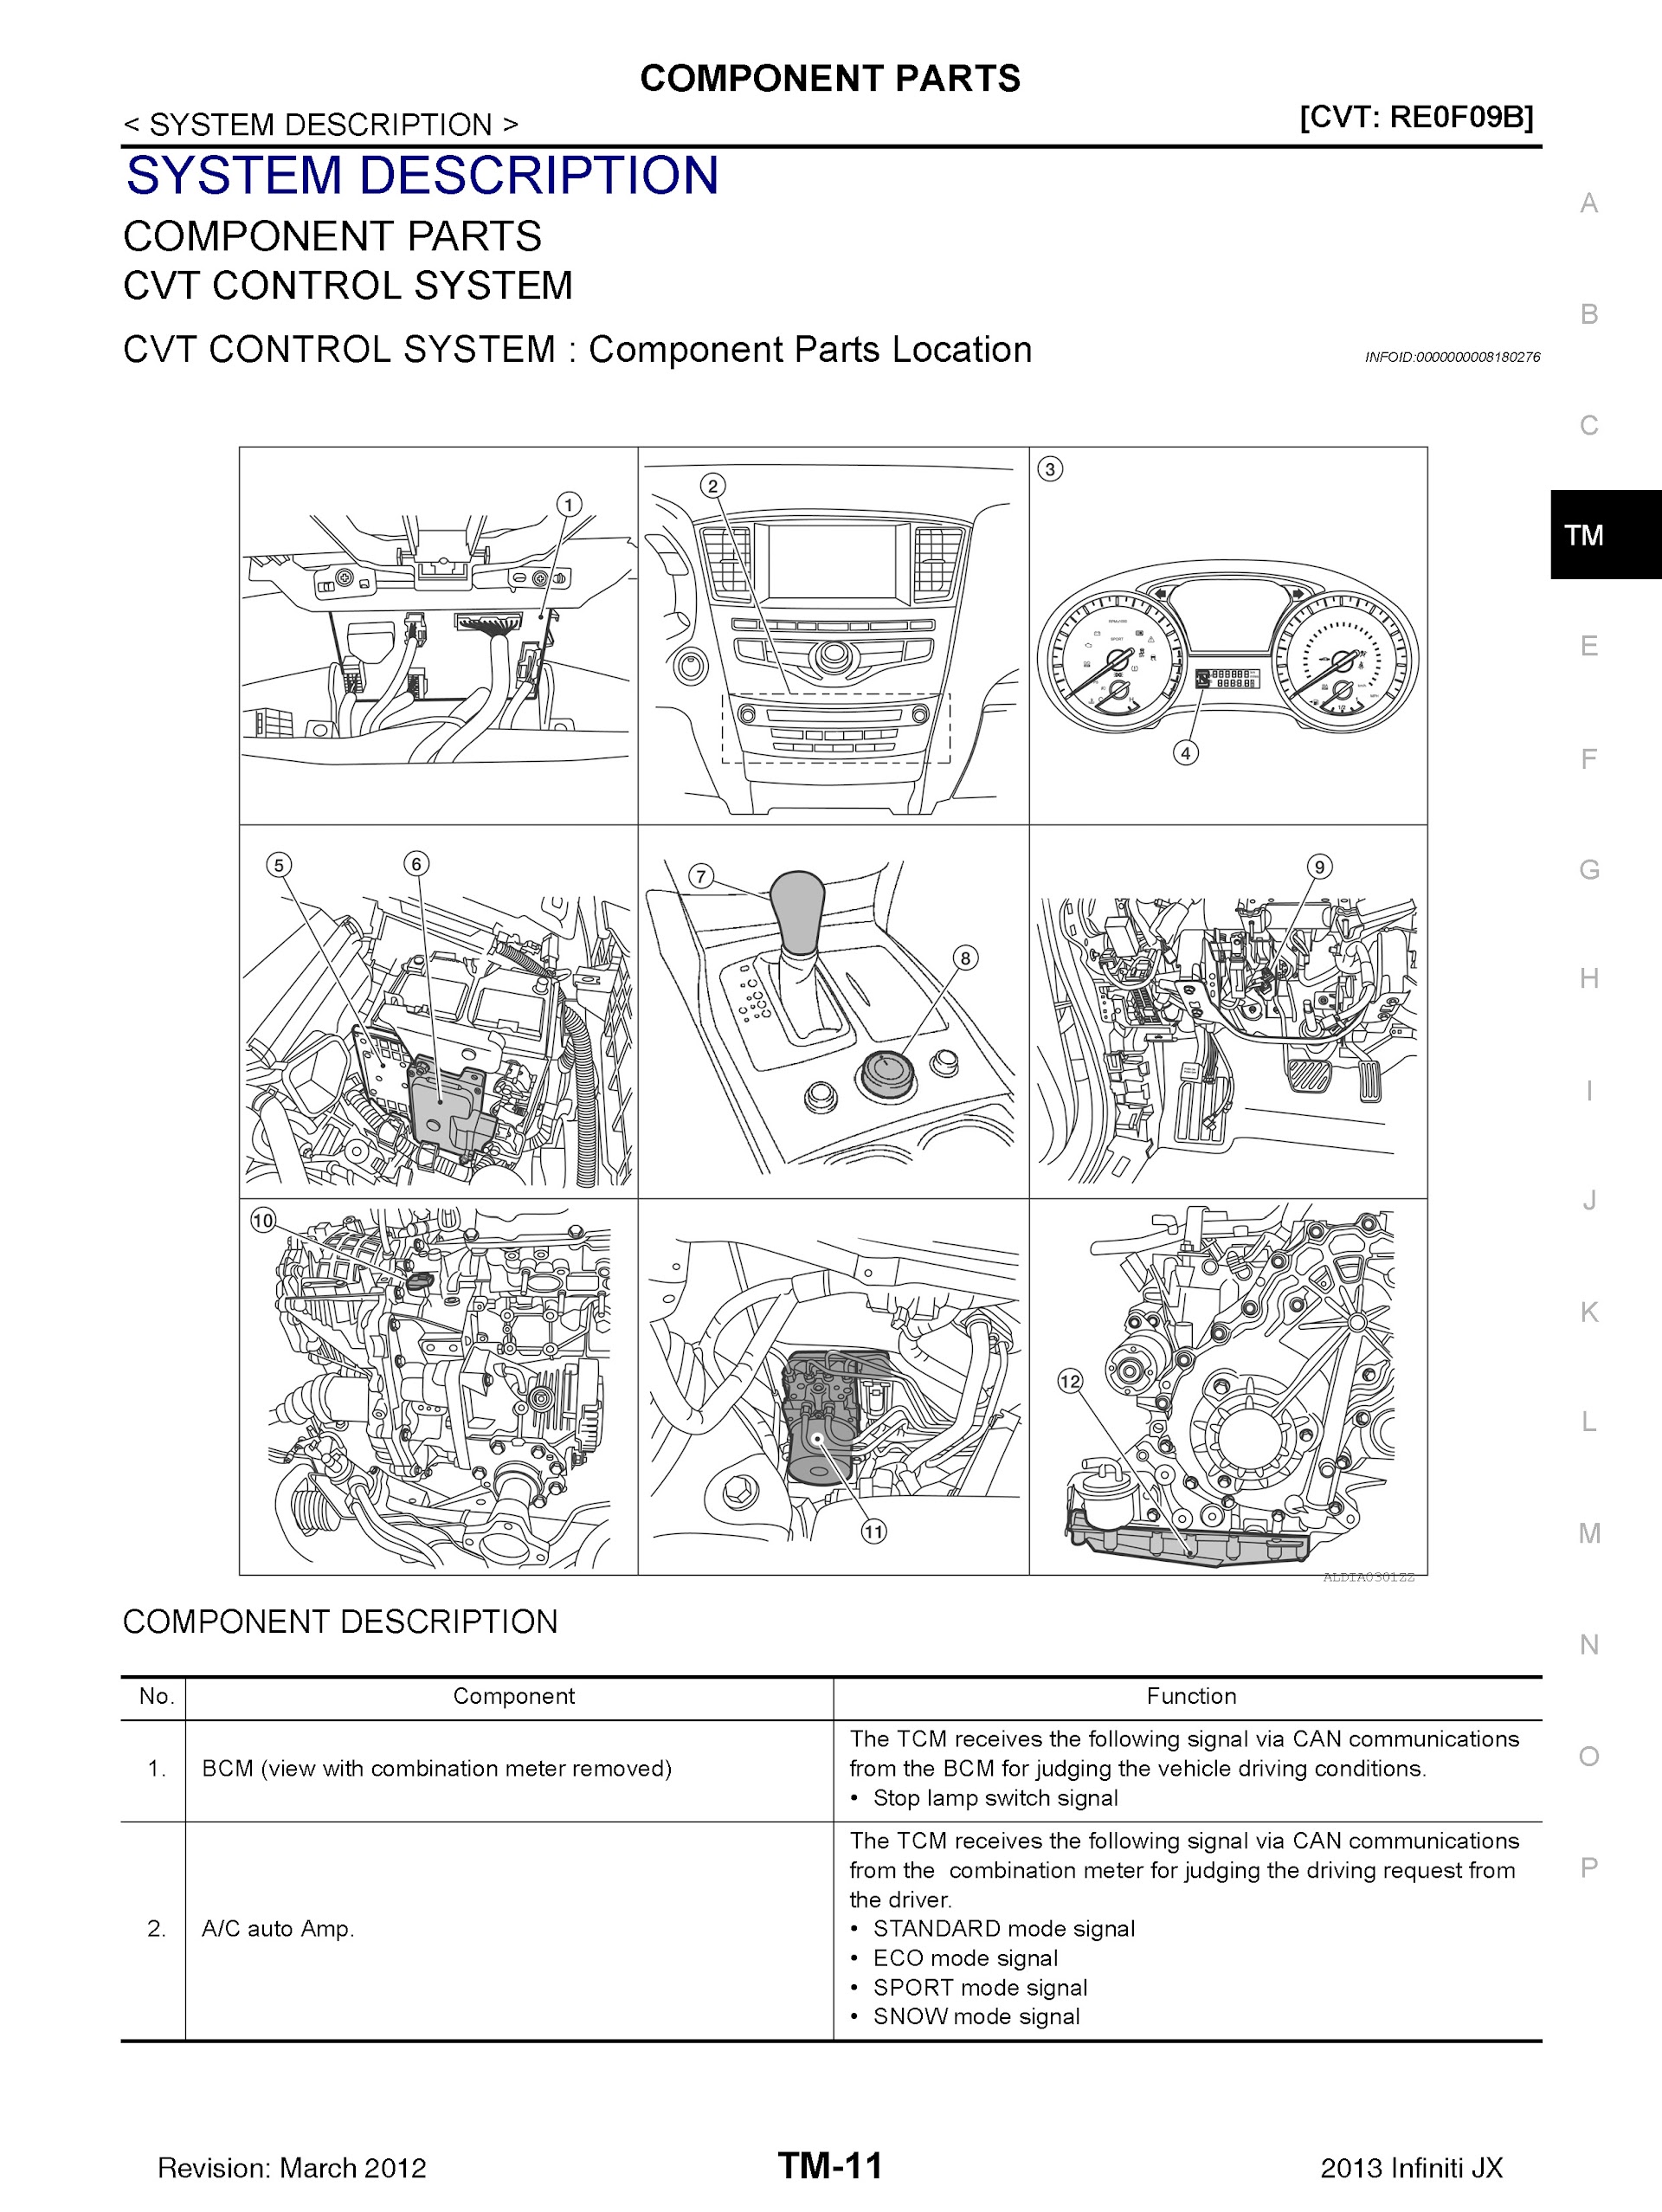 2011-2013 Infiniti QX60 Repair Manual (JX) L50 Series, Component Parts